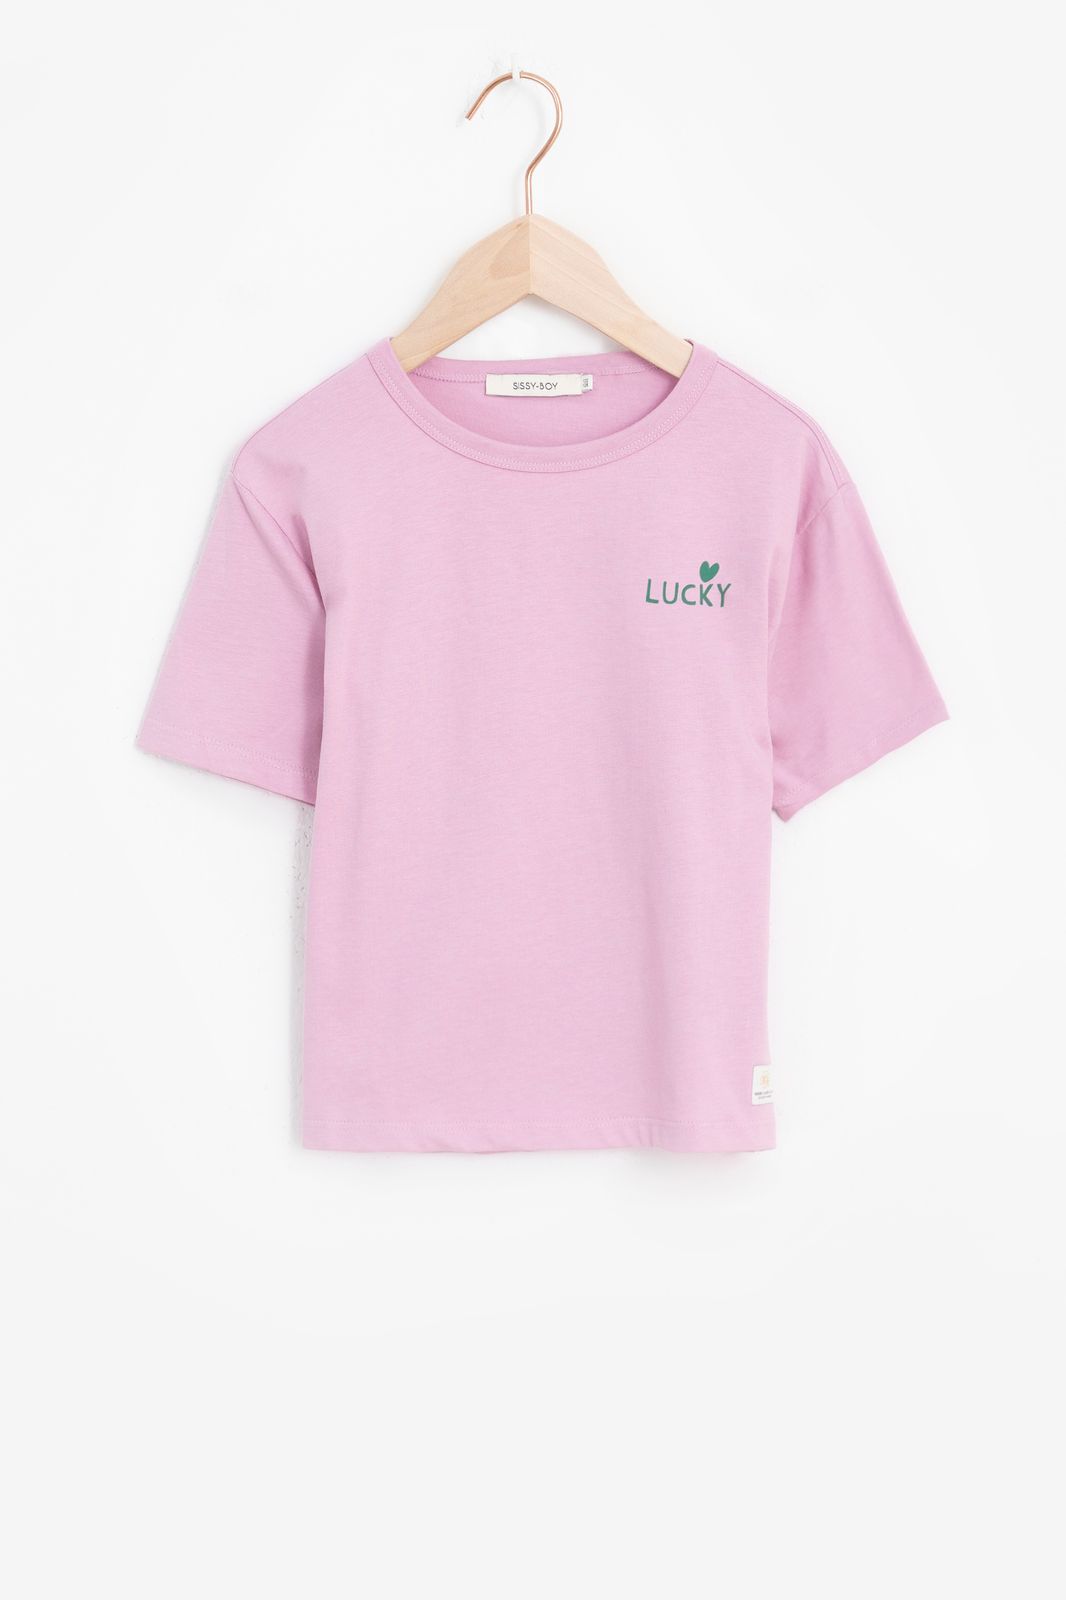 Roze T-shirt met lucky print